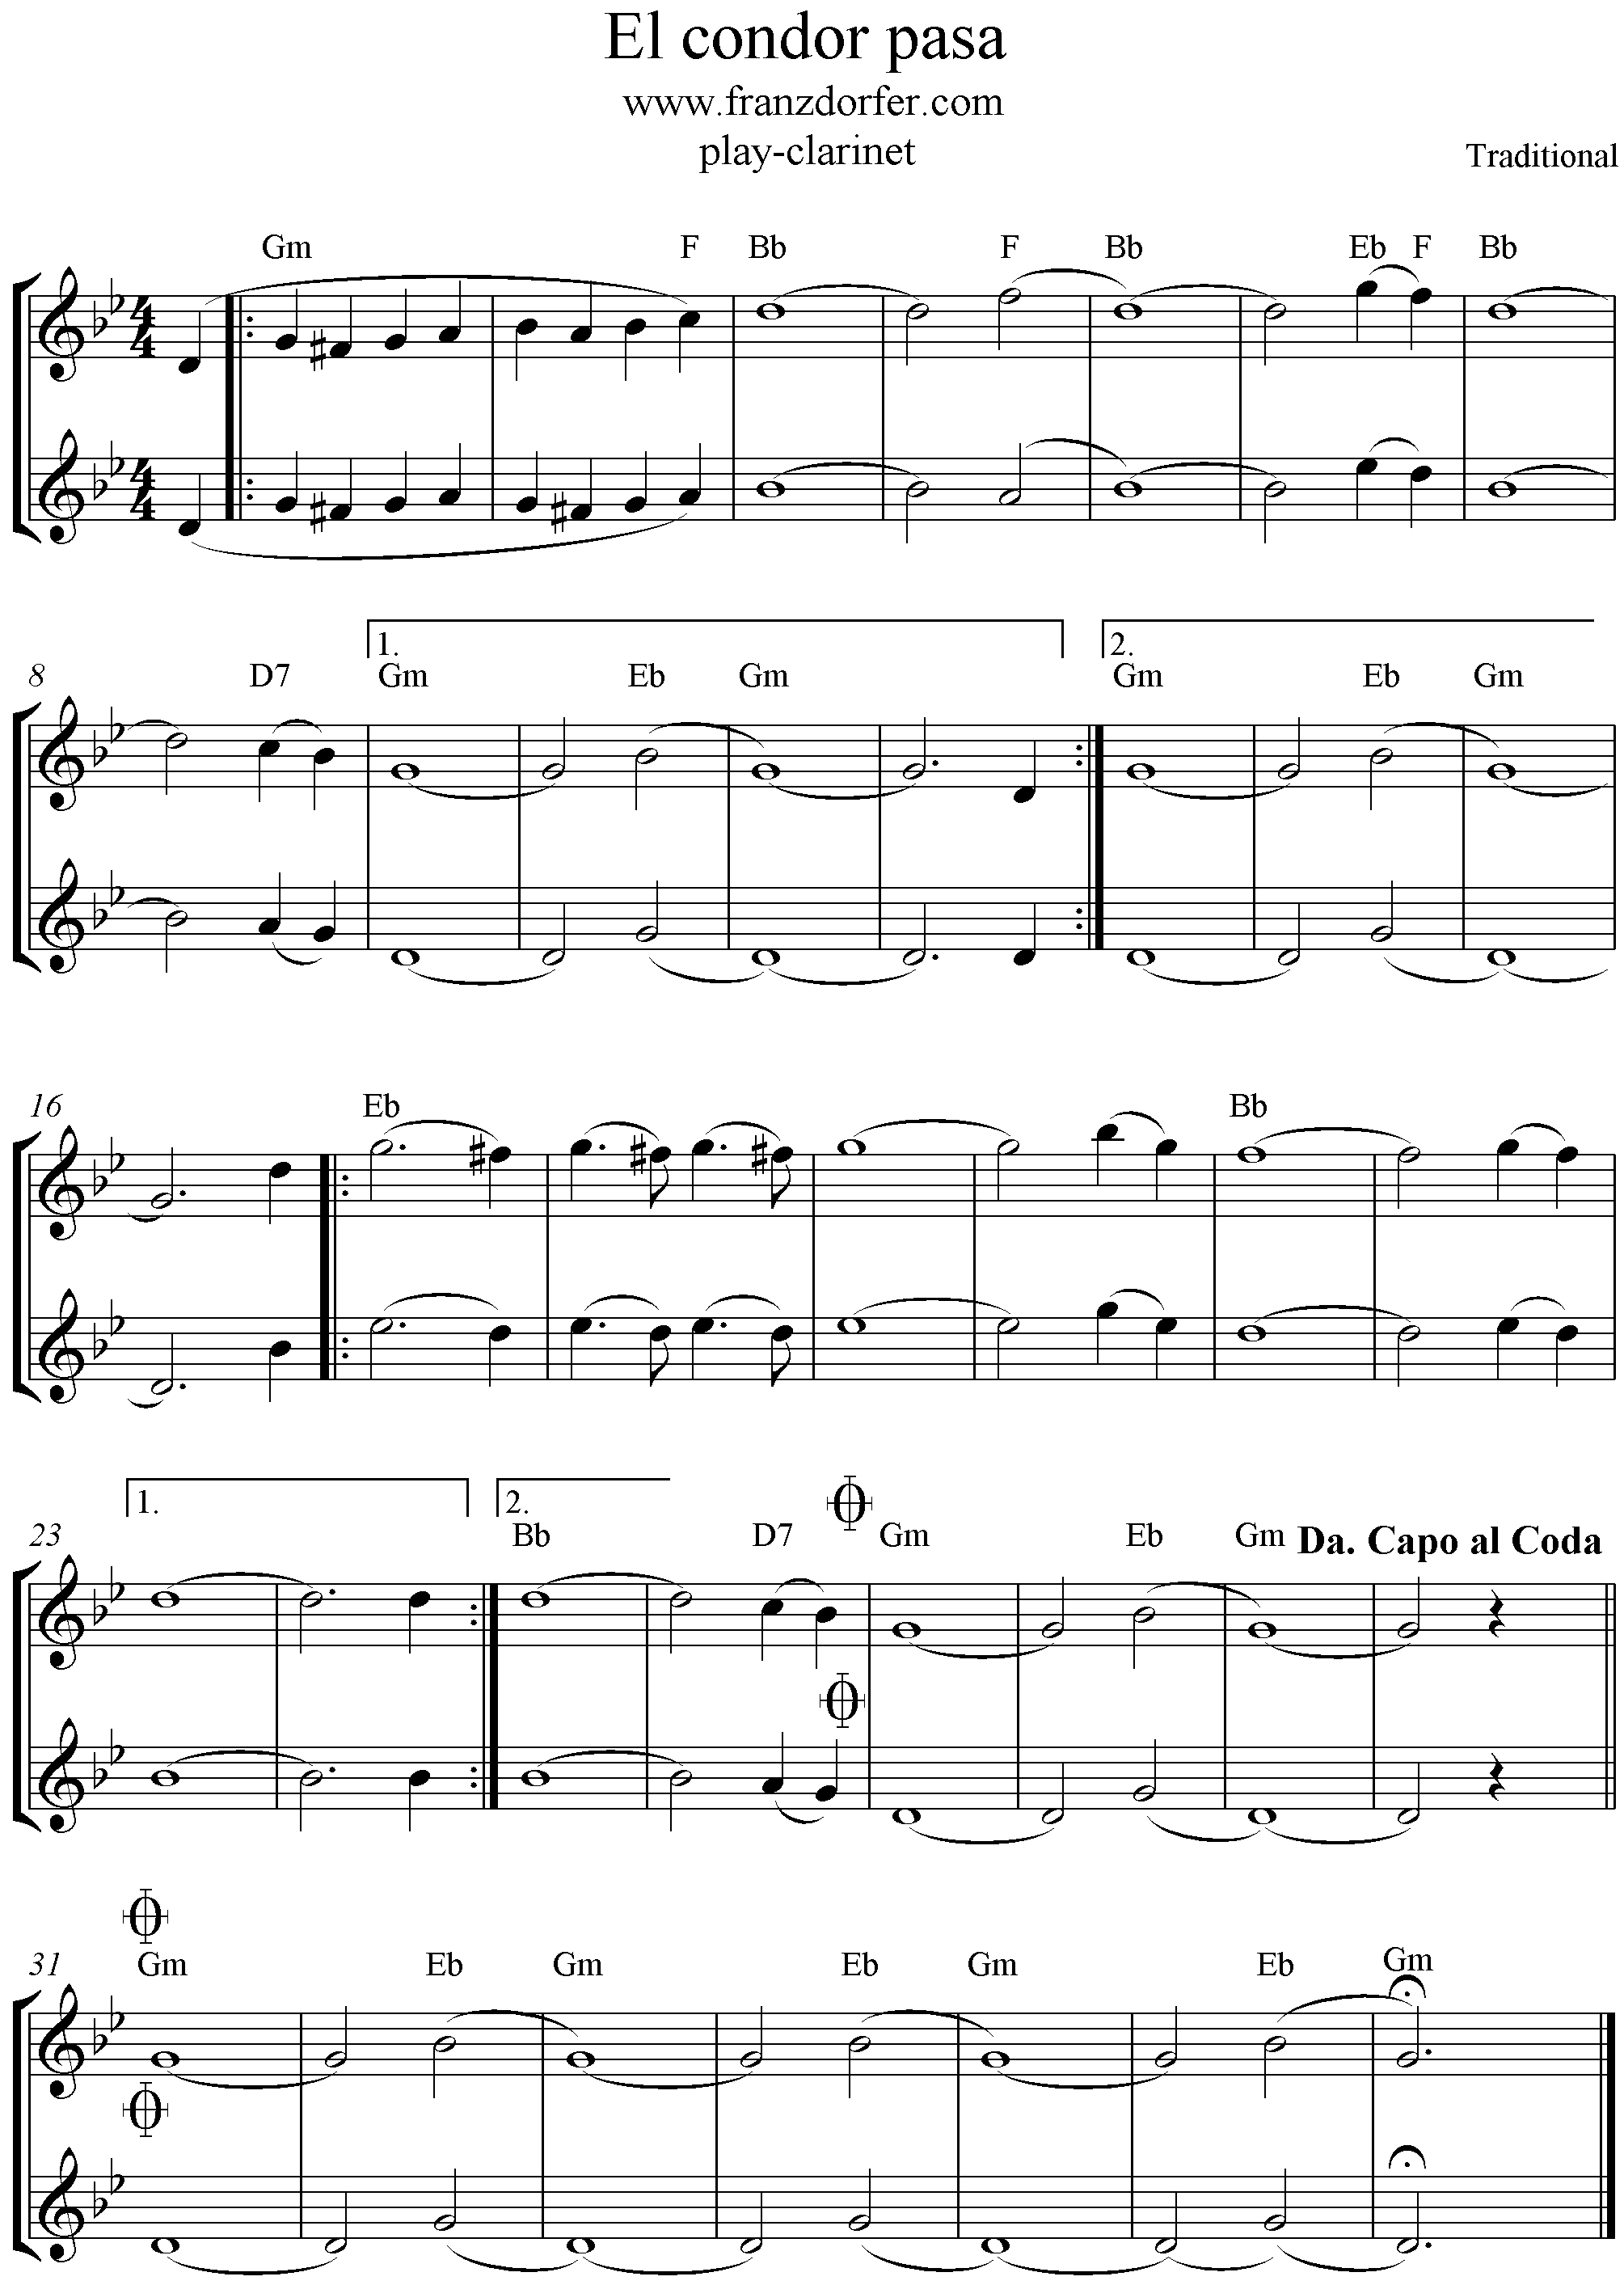 El Condor pasa, 2stimmig, g-moll, Clarinet